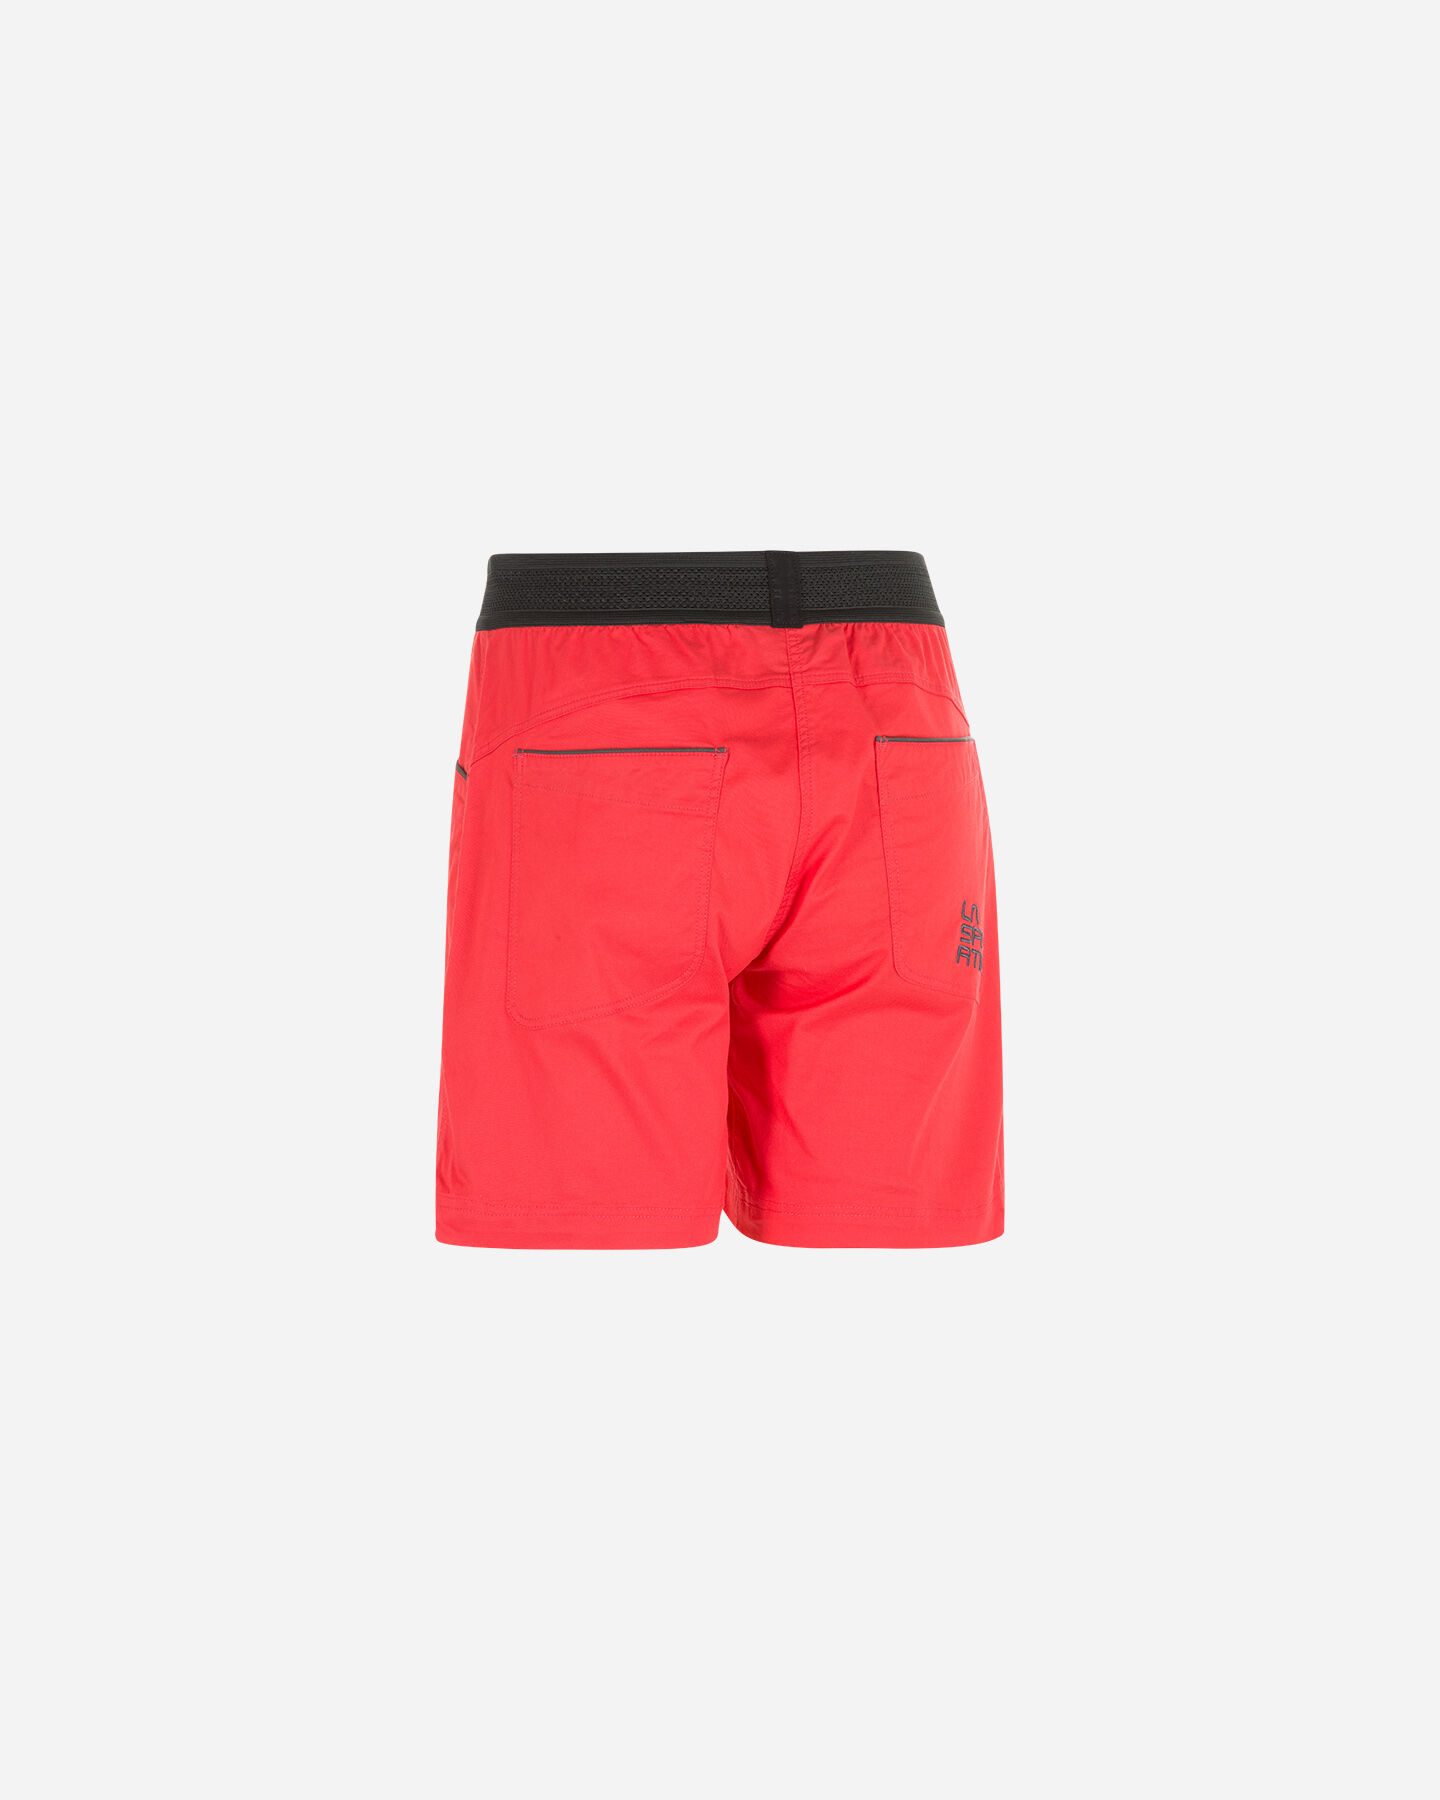  Pantaloncini LA SPORTIVA ONYX W S4096169|Hibiscus/C|S scatto 1